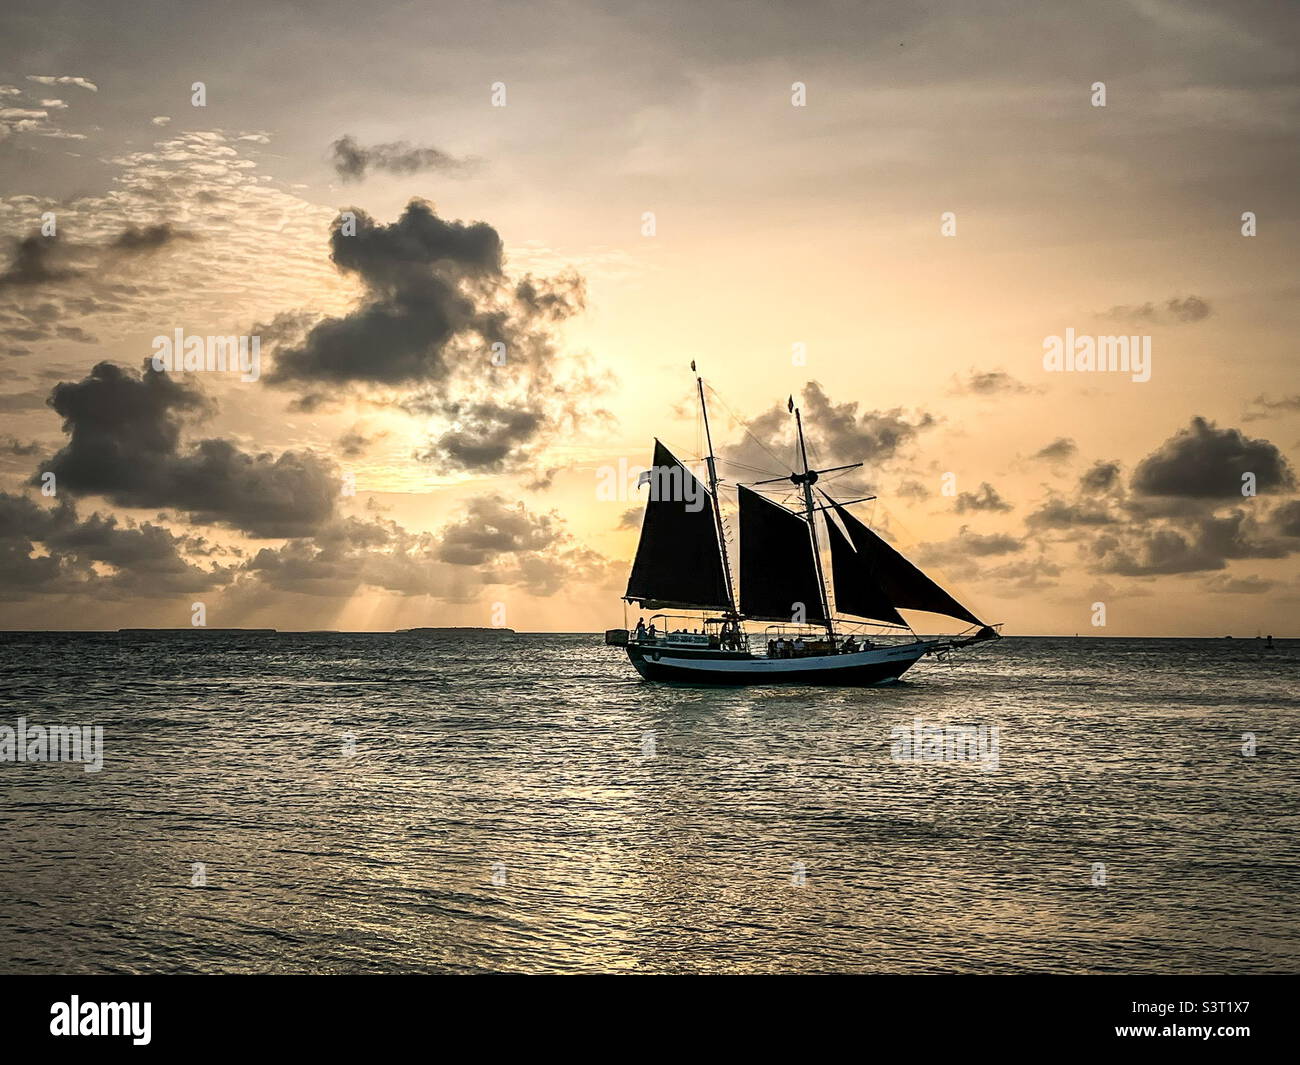 Barca a vela al tramonto, fotografia dell'oceano, fotografia del tramonto, Key West, Florida, crociera booze, festa al tramonto Foto Stock